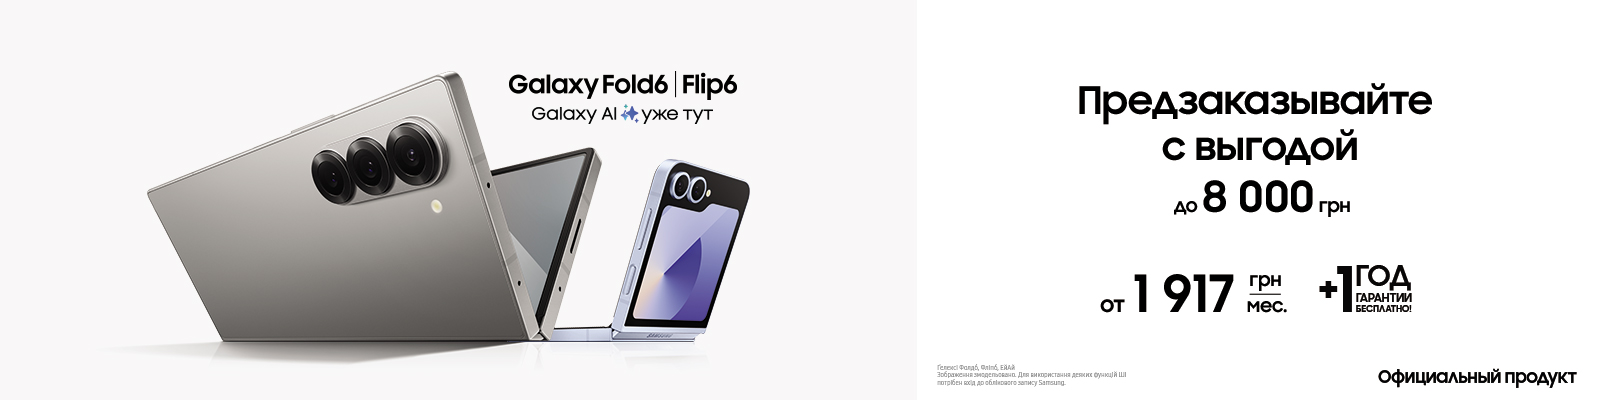 Предзаказывайте с выгодой Galaxy Fold 6 | Flip 6